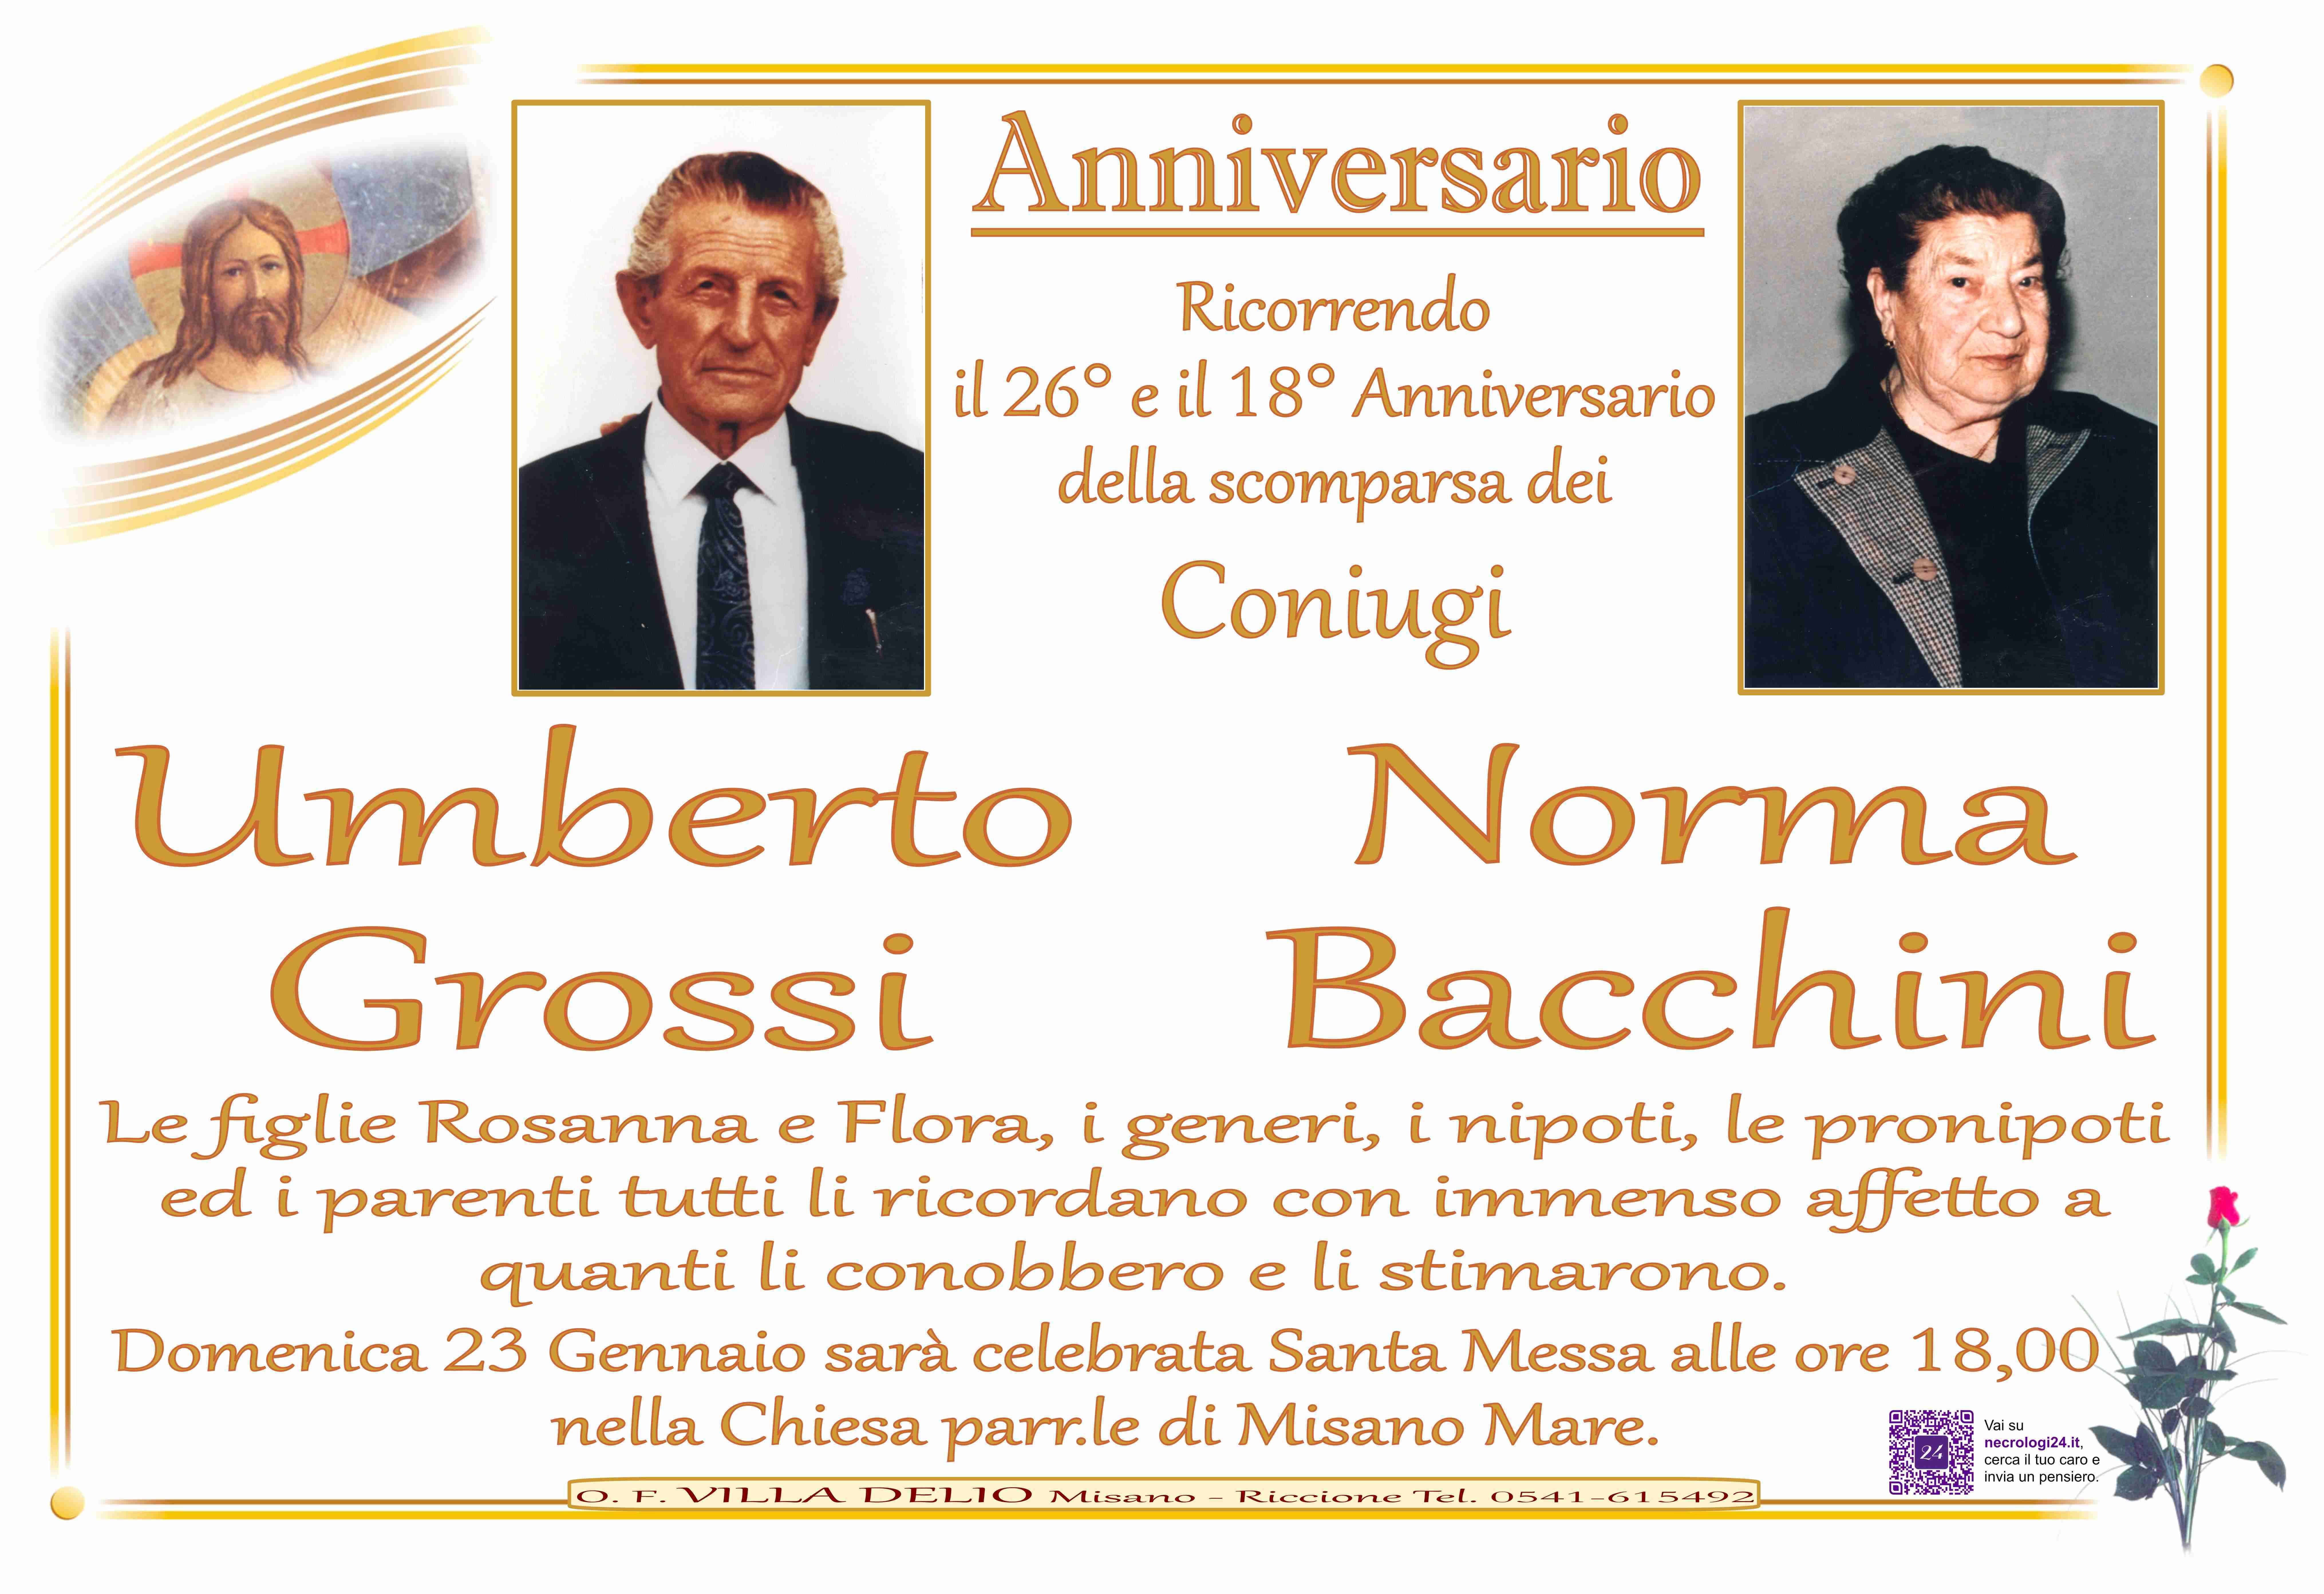 Umberto Grossi e Norma Bacchini